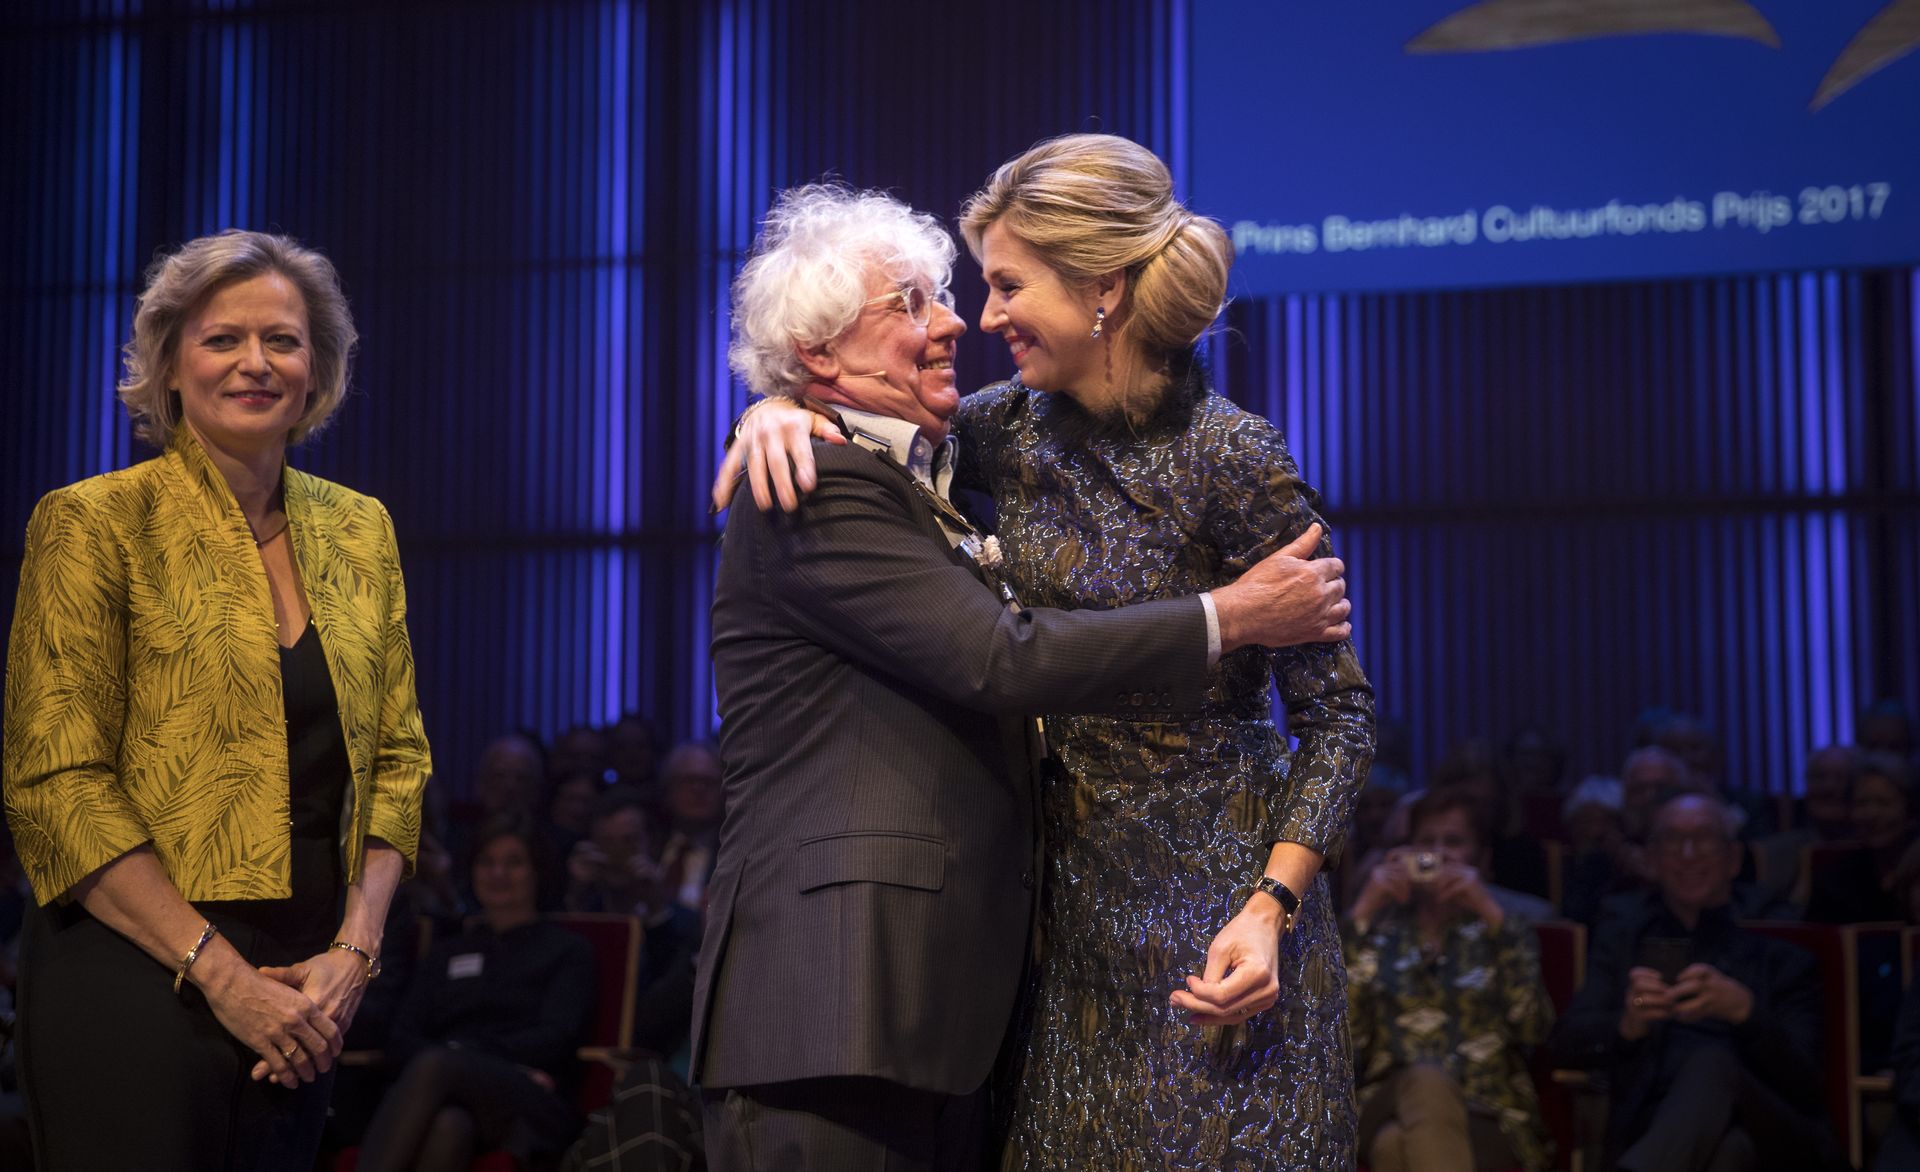 Uitreiking Prins Bernhard Cultuurfonds Prijs 2017